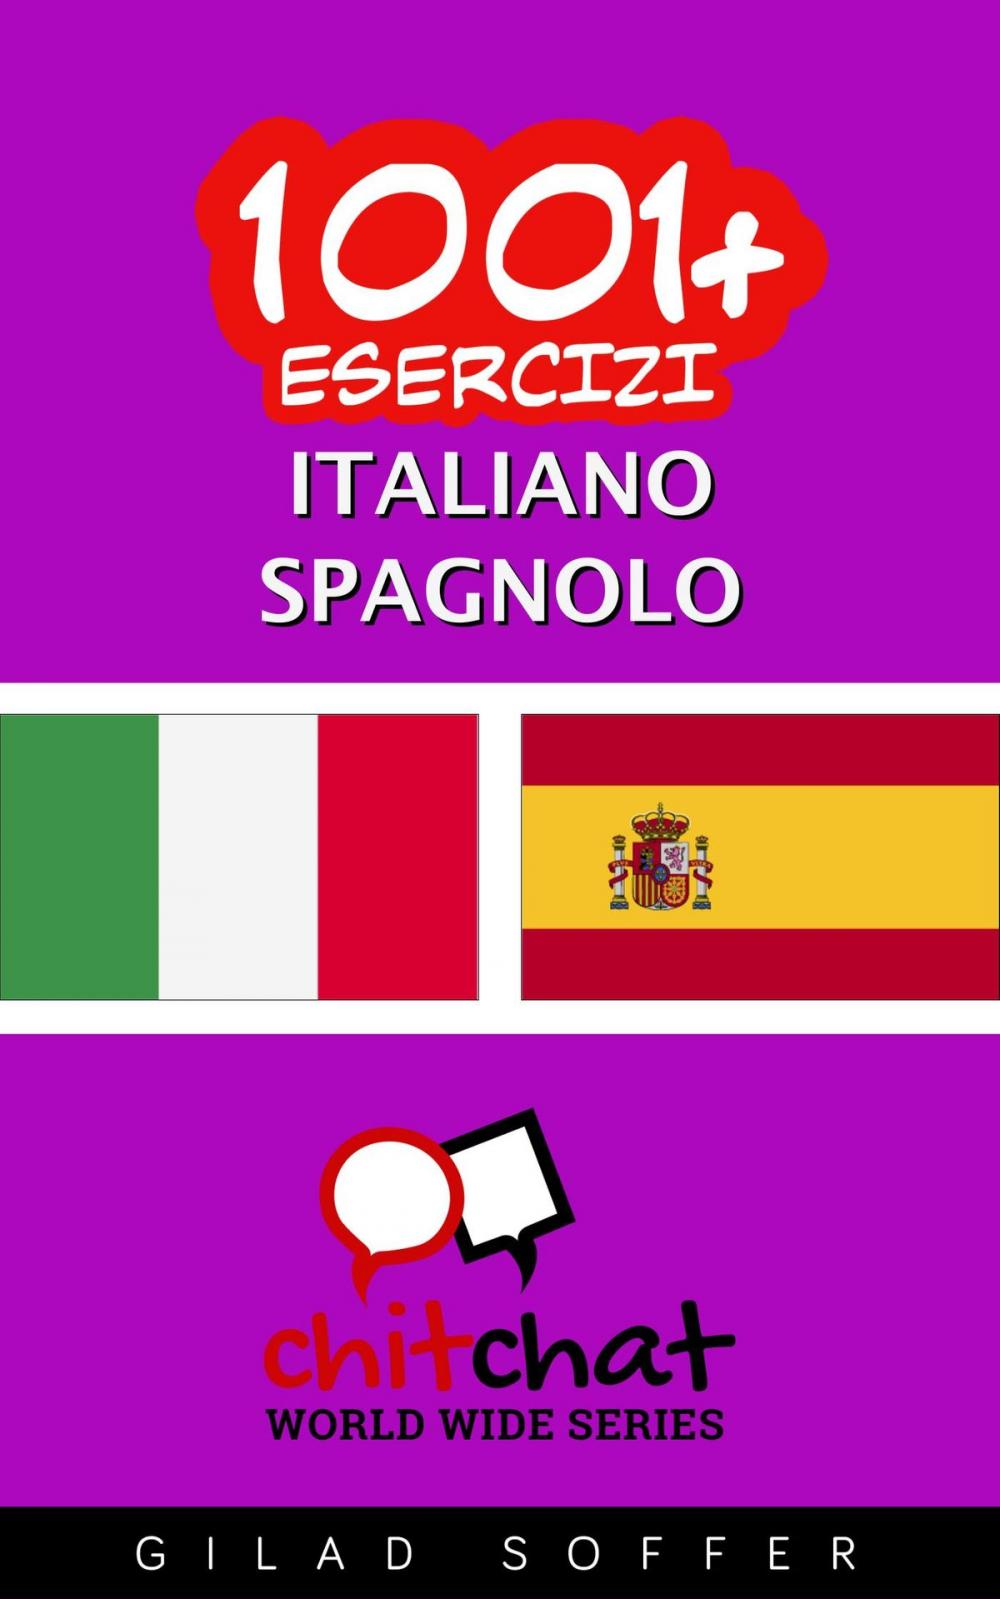 Big bigCover of 1001+ Esercizi Italiano - Spagnolo